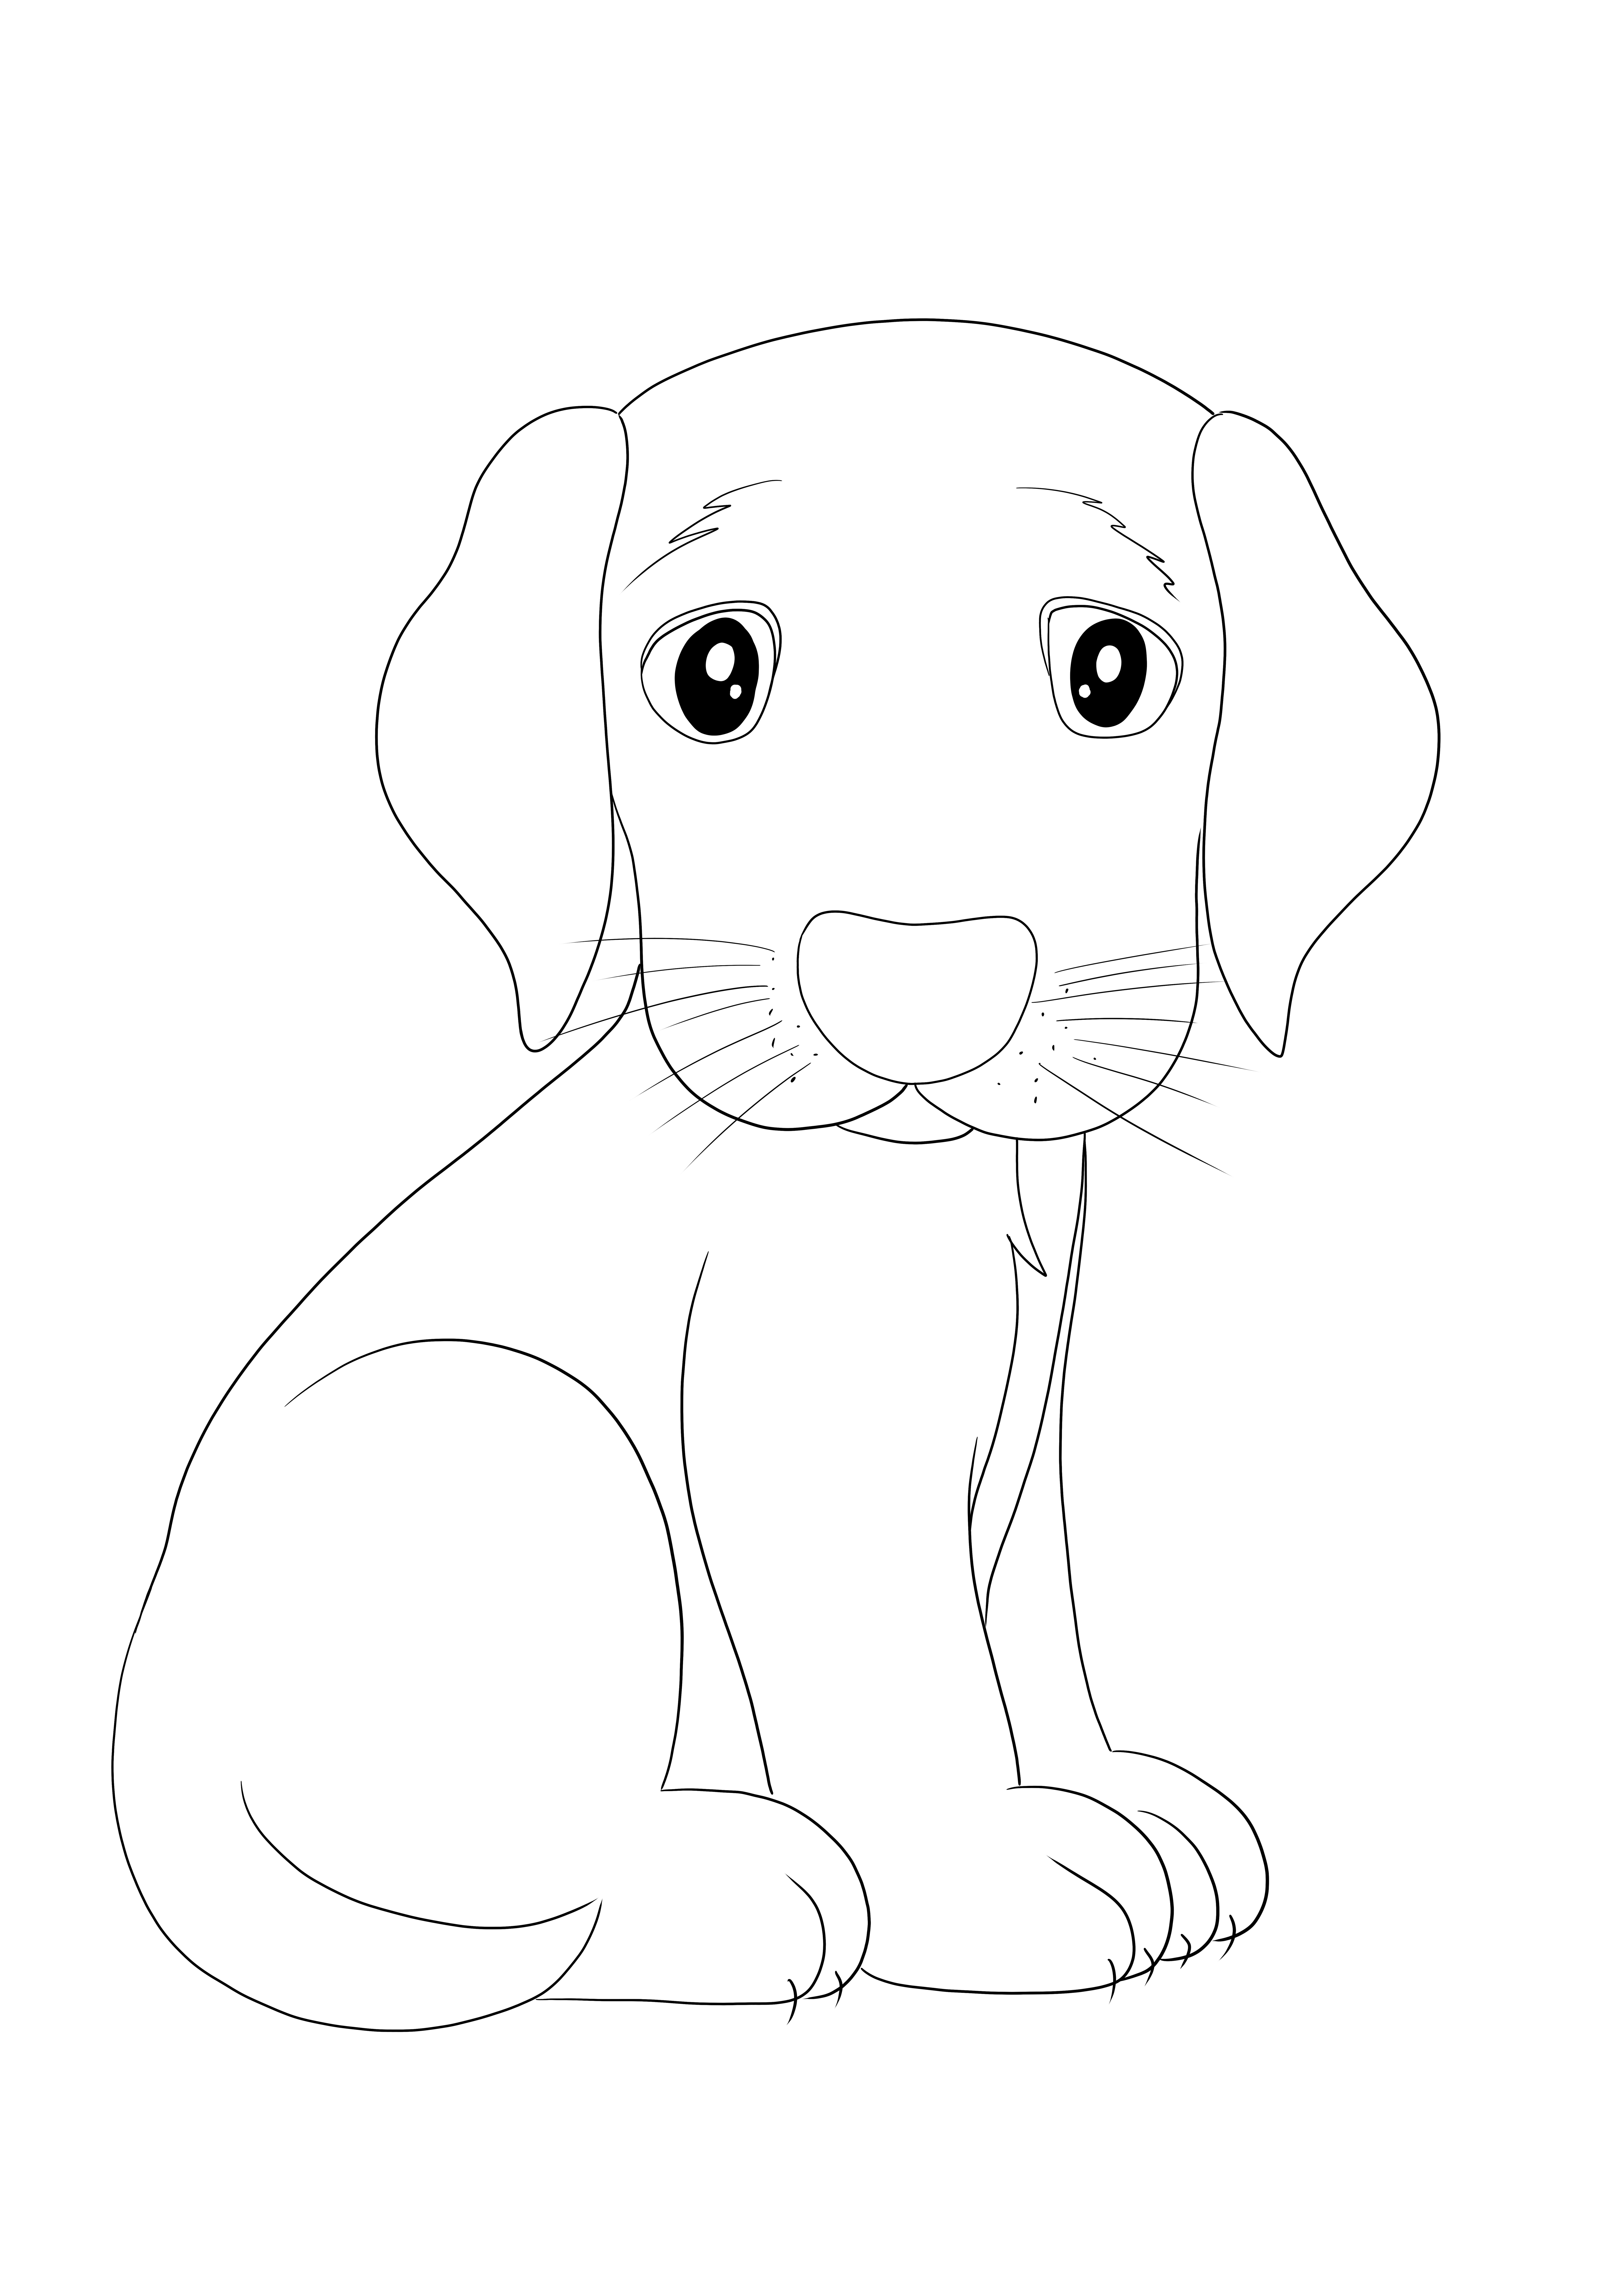 Sederhana untuk mewarnai gambar anak anjing yang sedih untuk anak-anak bebas untuk dicetak